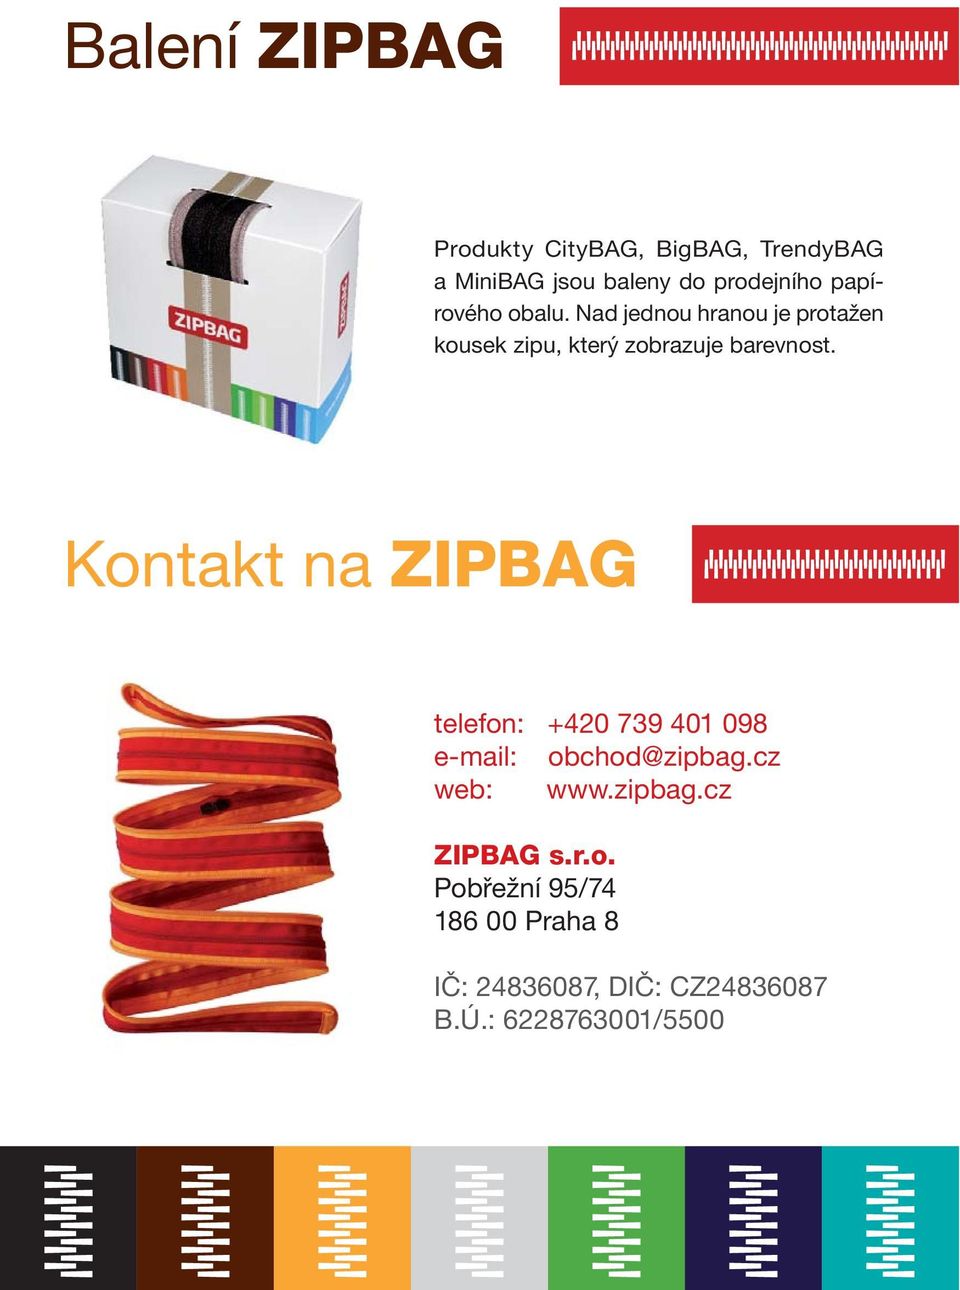 Kontakt na ZIPBAG telefon: +420 739 401 098 e-mail: obchod@zipbag.cz web: www.zipbag.cz ZIPBAG s.